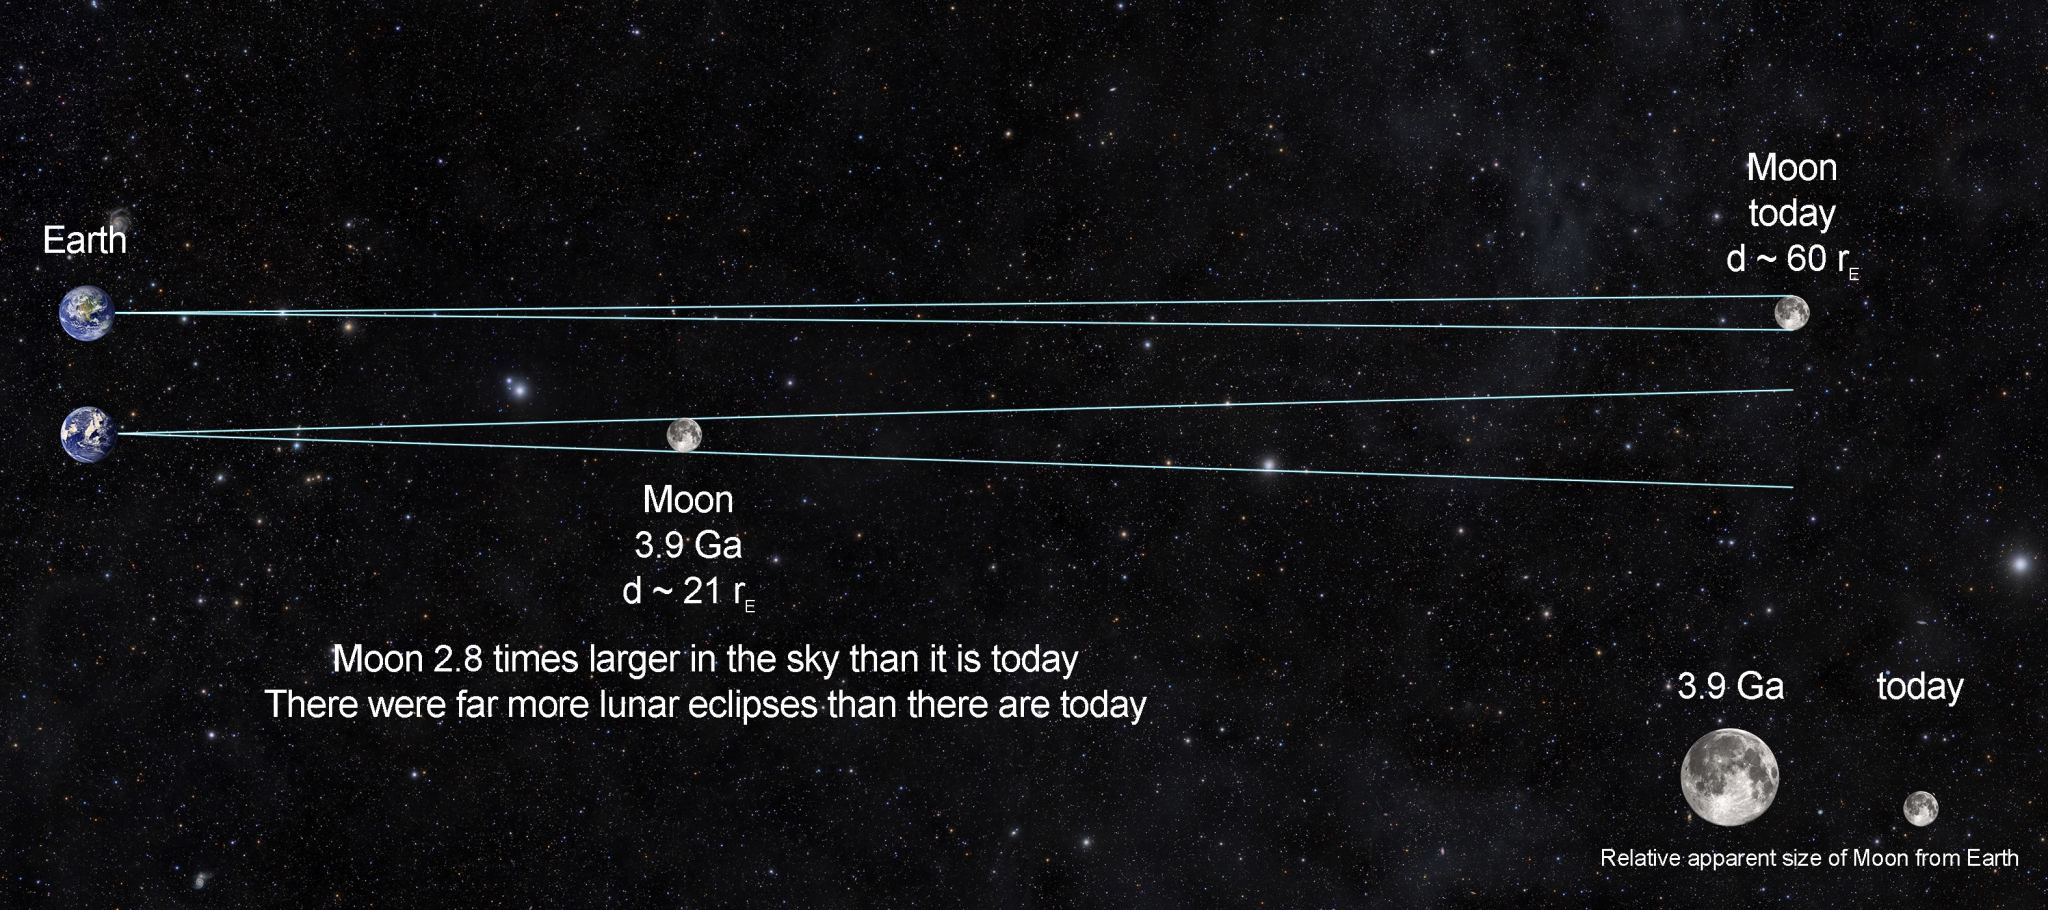 Расстояние от земли до луны фото